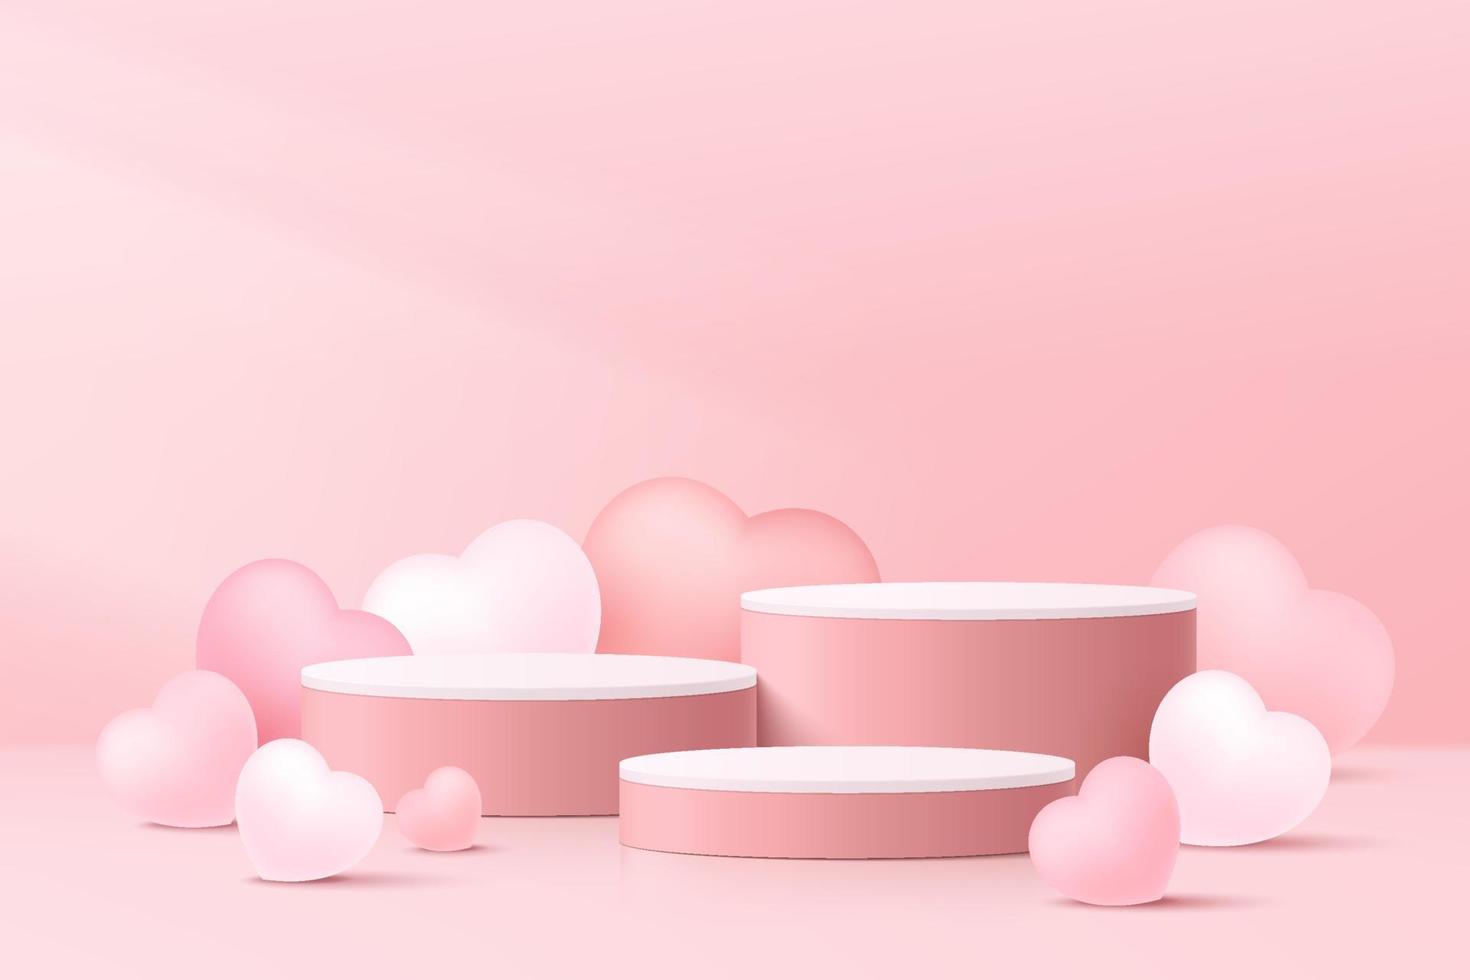 realistisk rosa 3d cylinder piedestal podium set med ballonger hjärtform. pastell minimal scen för produkter showcase, promotion display. abstrakt studio rum plattform design. vektor illustration.